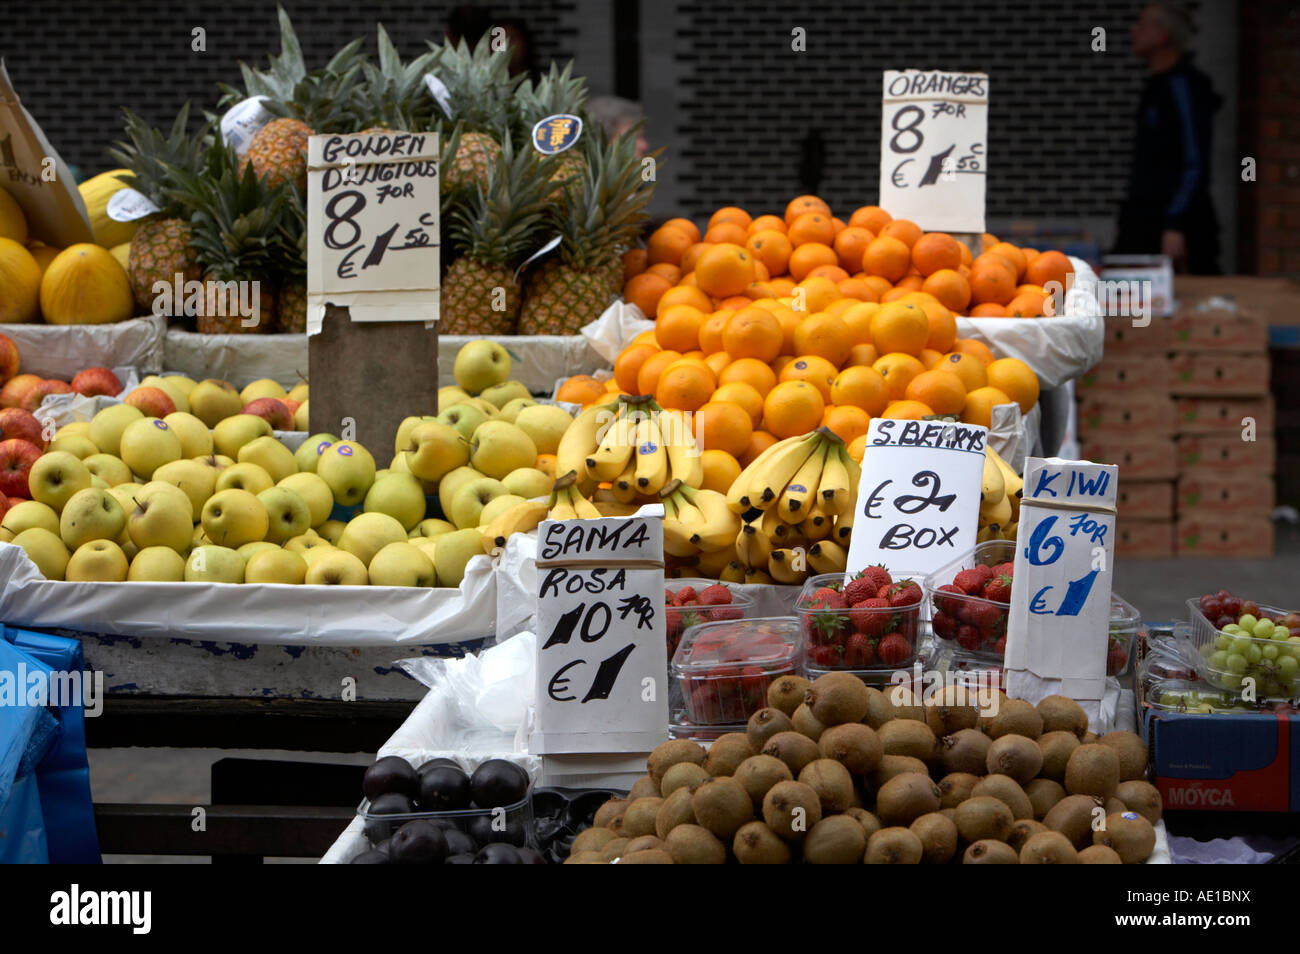 verschiedene Früchte auf Obst Stall mit Schildern in englischer Sprache und mit Euro-Preisen bei Outdoor-Fruit market dublin Stockfoto